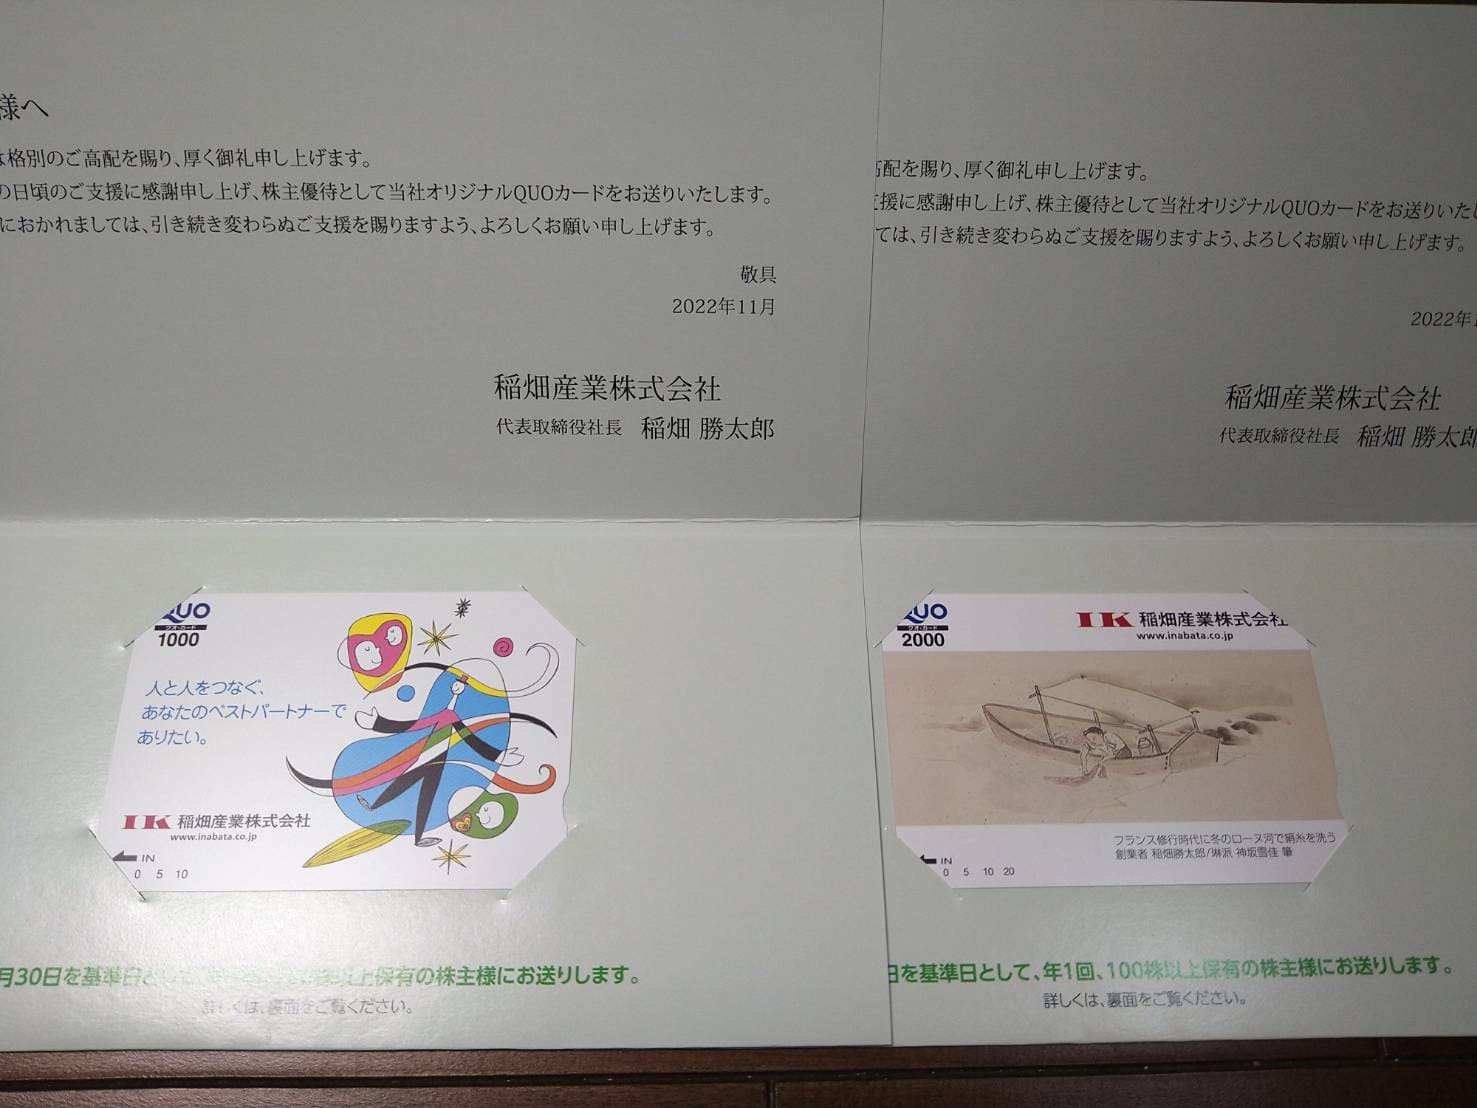 稲畑産業株主優待クオカード1,000円分と2,000円分
